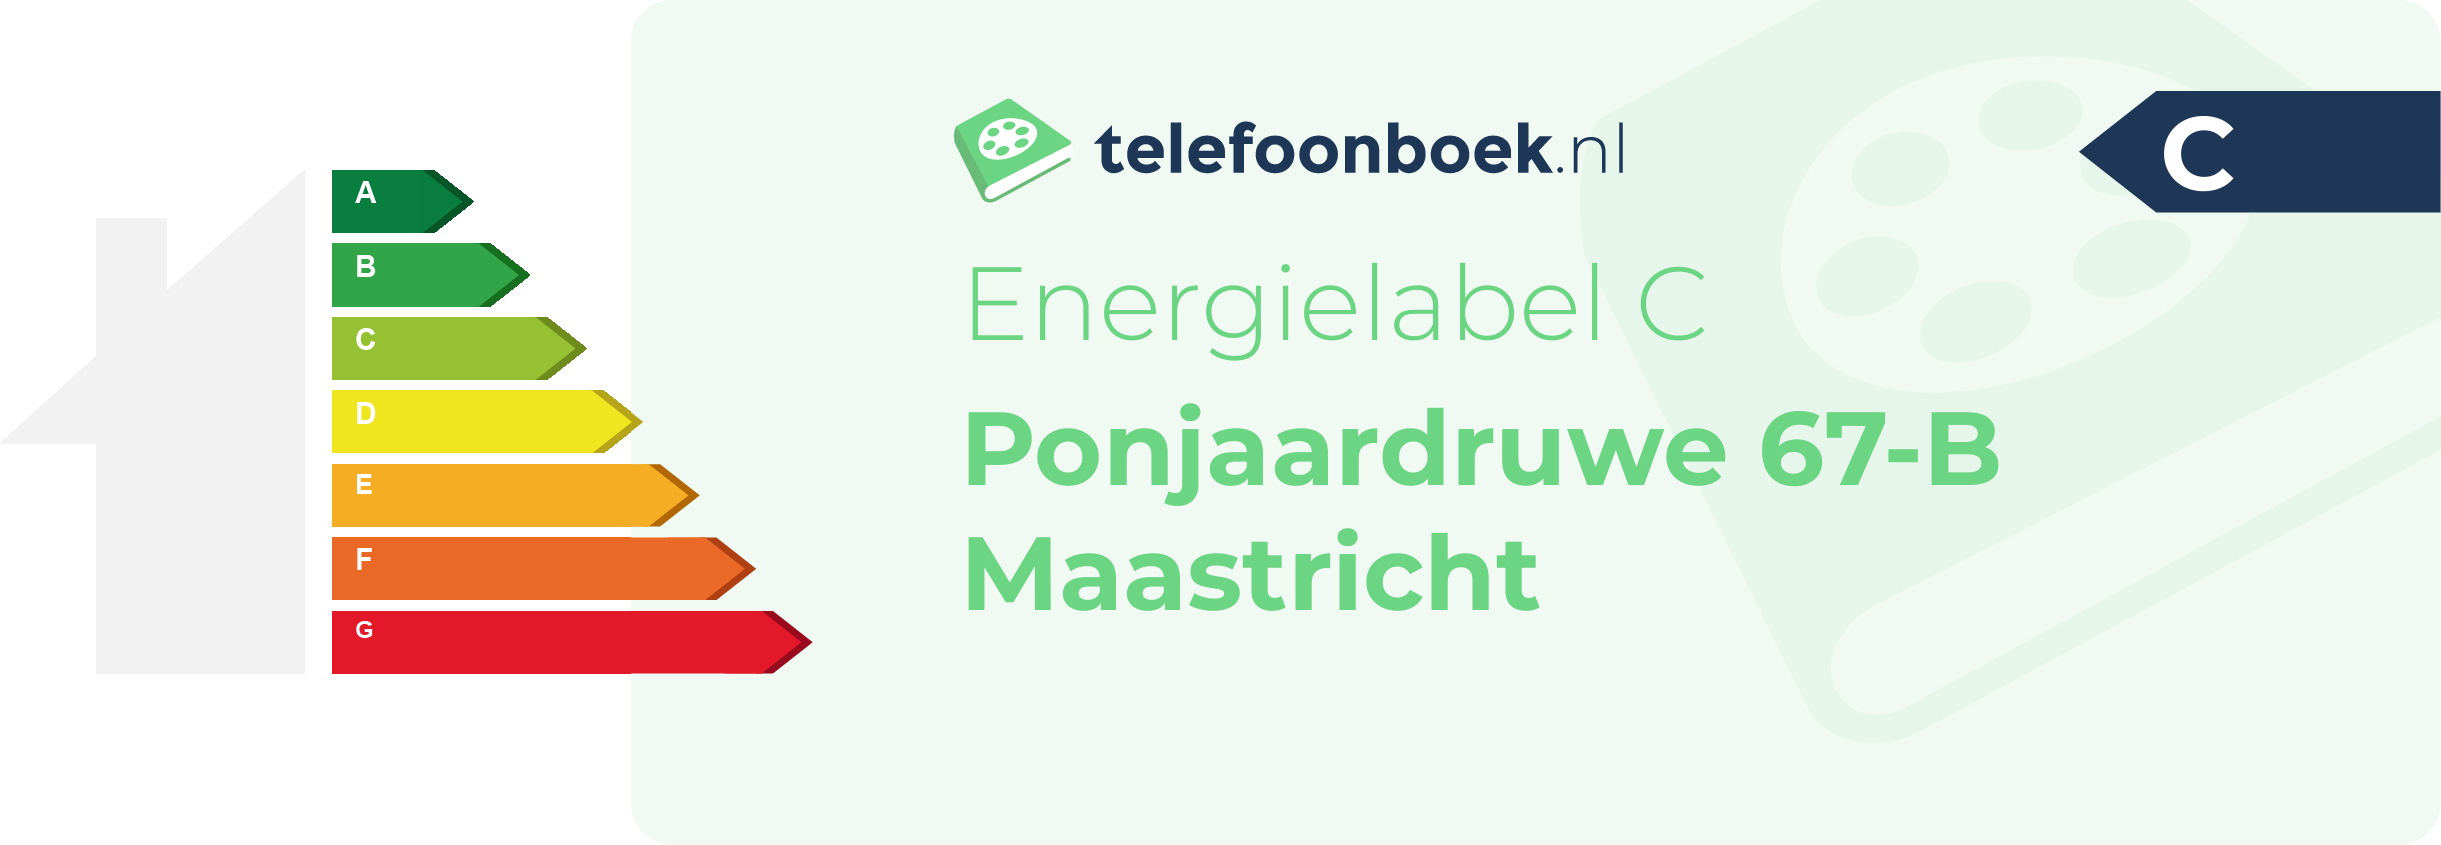 Energielabel Ponjaardruwe 67-B Maastricht